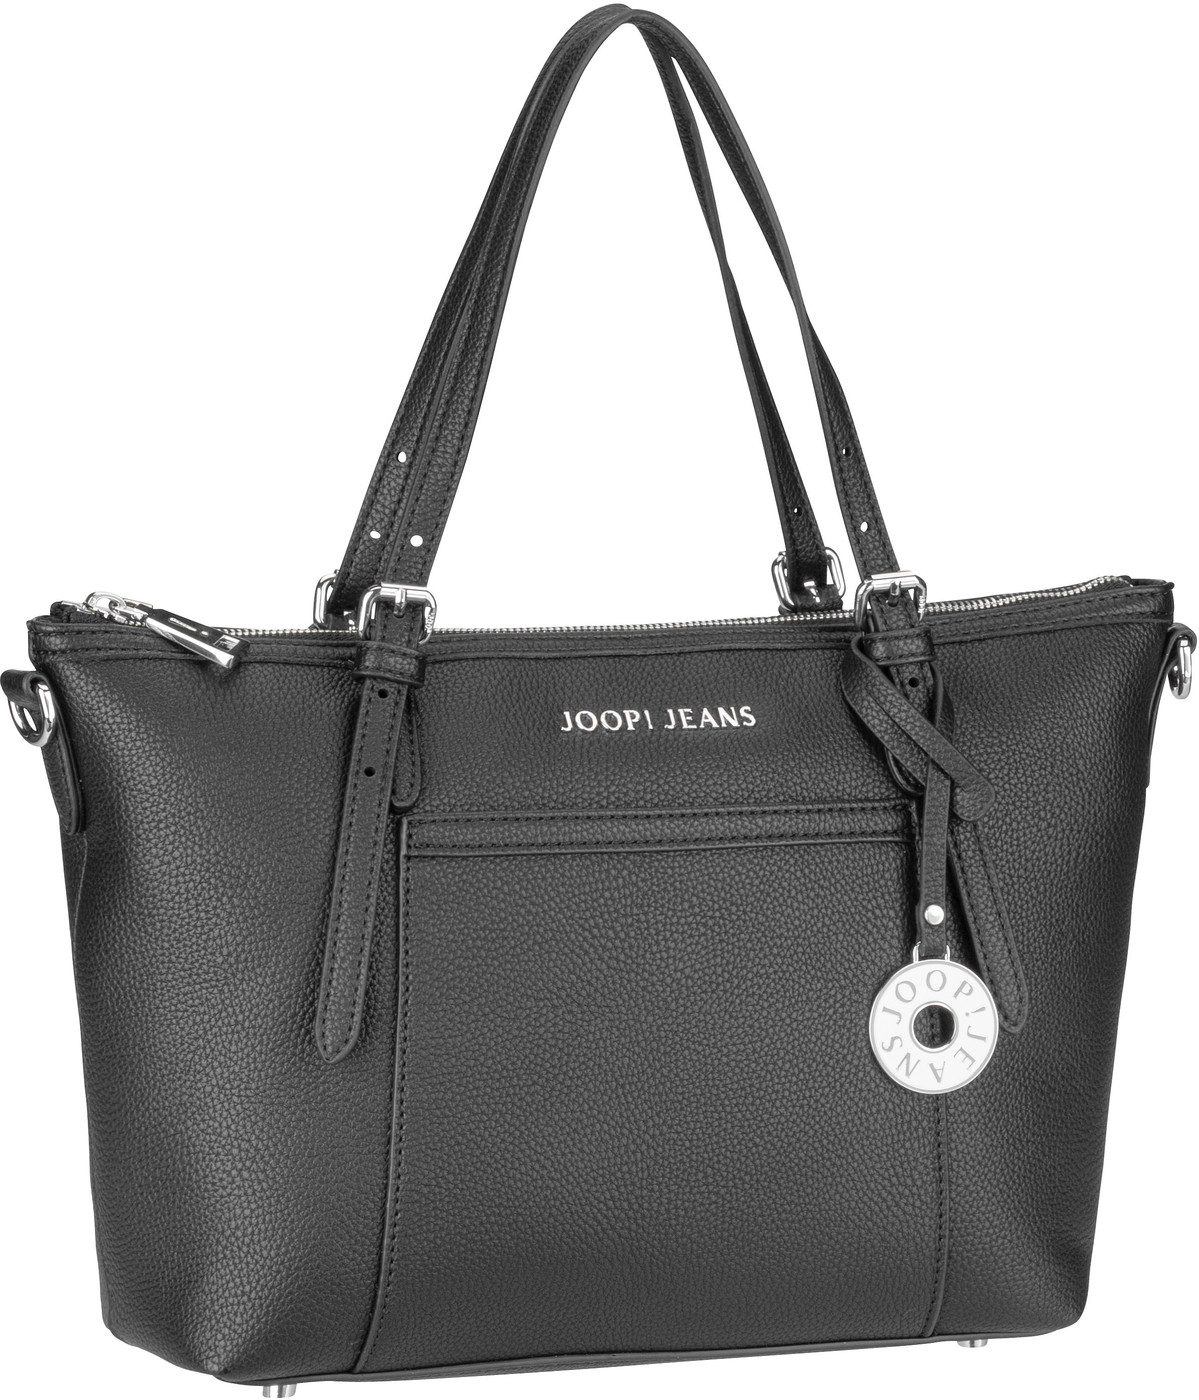 Joop Diurno Helena Handbag SHZ  in Black (9.4 Liter), Handtasche